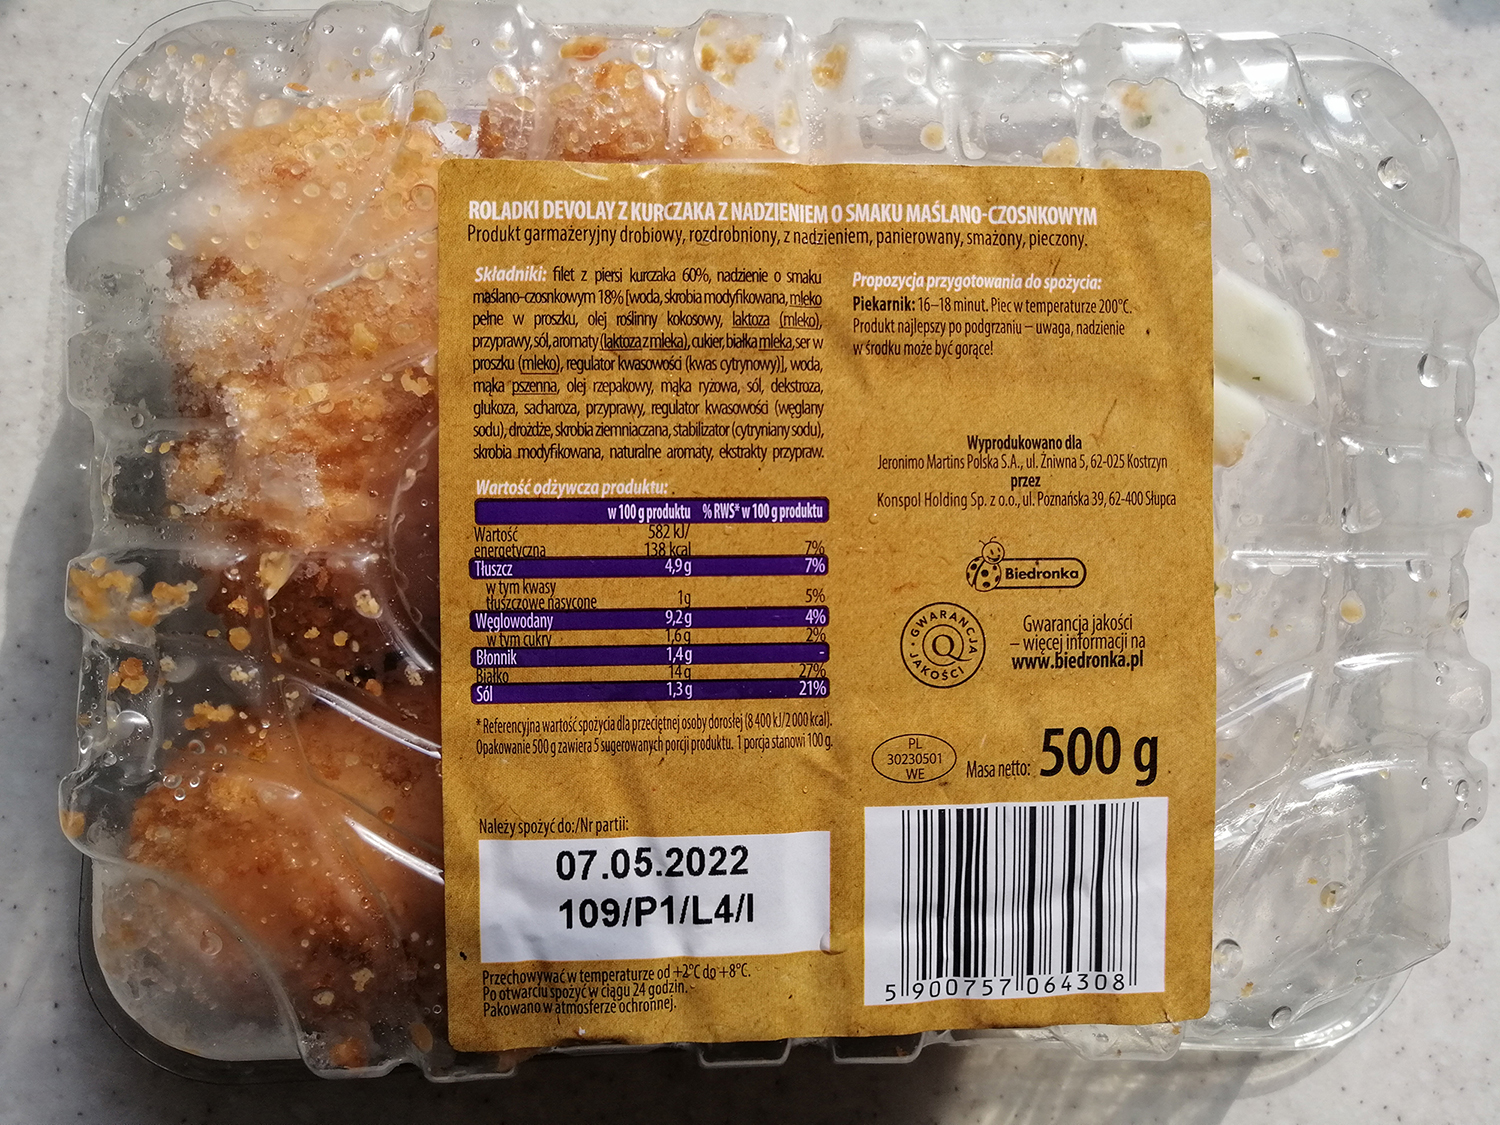 Roladki Devolay z kurczaka z nadzieniem o smaku maślano-czosnkowym, 500 g